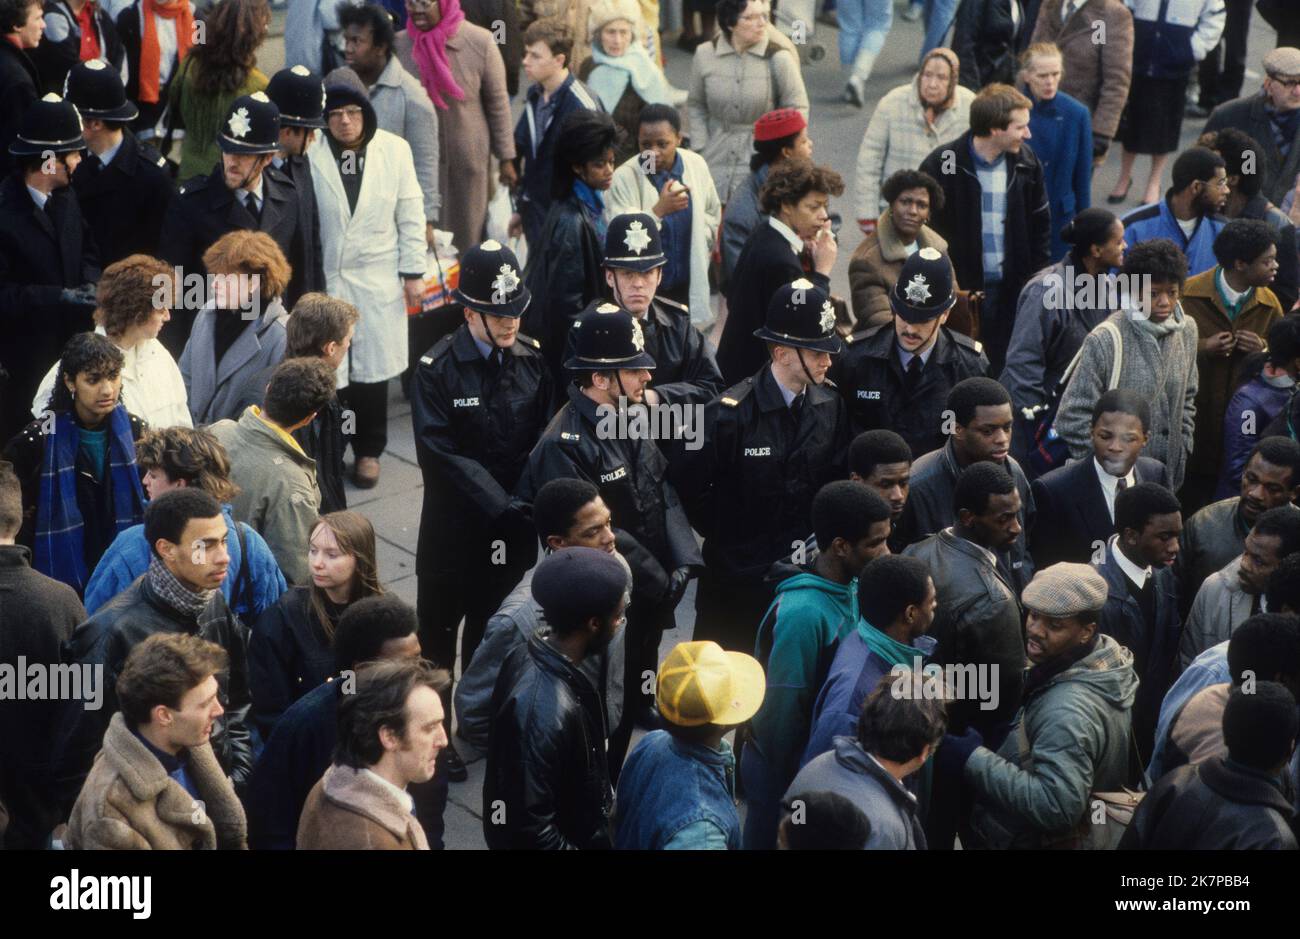 Oficiales de policía patrullando las calles de Wolverhampton después de que Clinton McCurbin muriera de asfixia mientras era arrestado en la 'PRÓXIMA' tienda en Wolverhampton. Febrero 20th 1987 Foto de stock